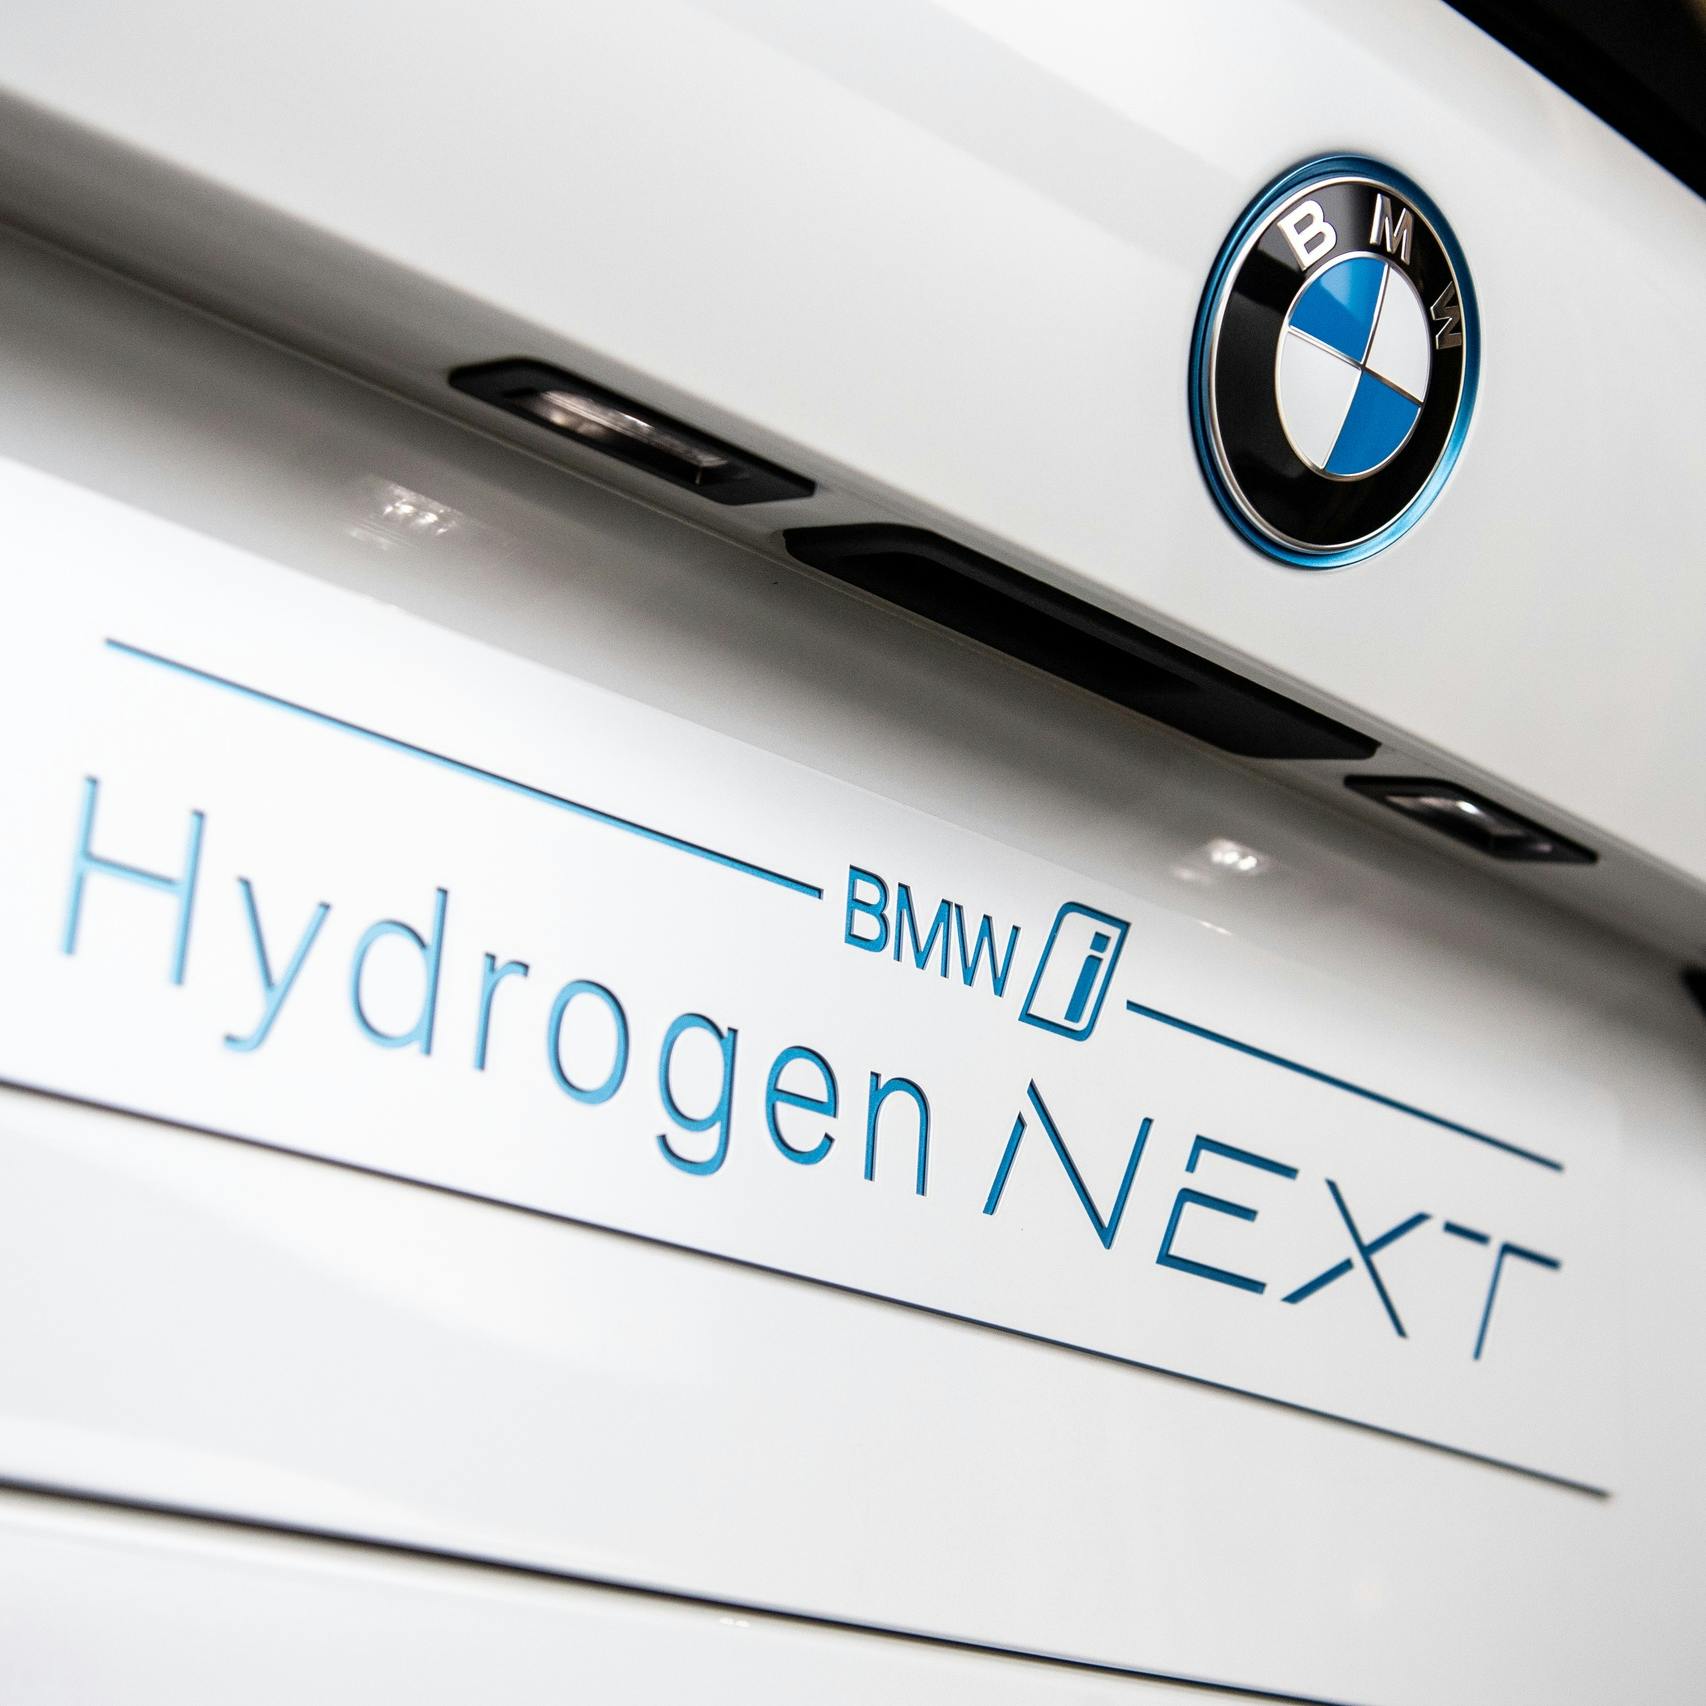 BMW wil meeliften op bestaande waterstofnetwerken